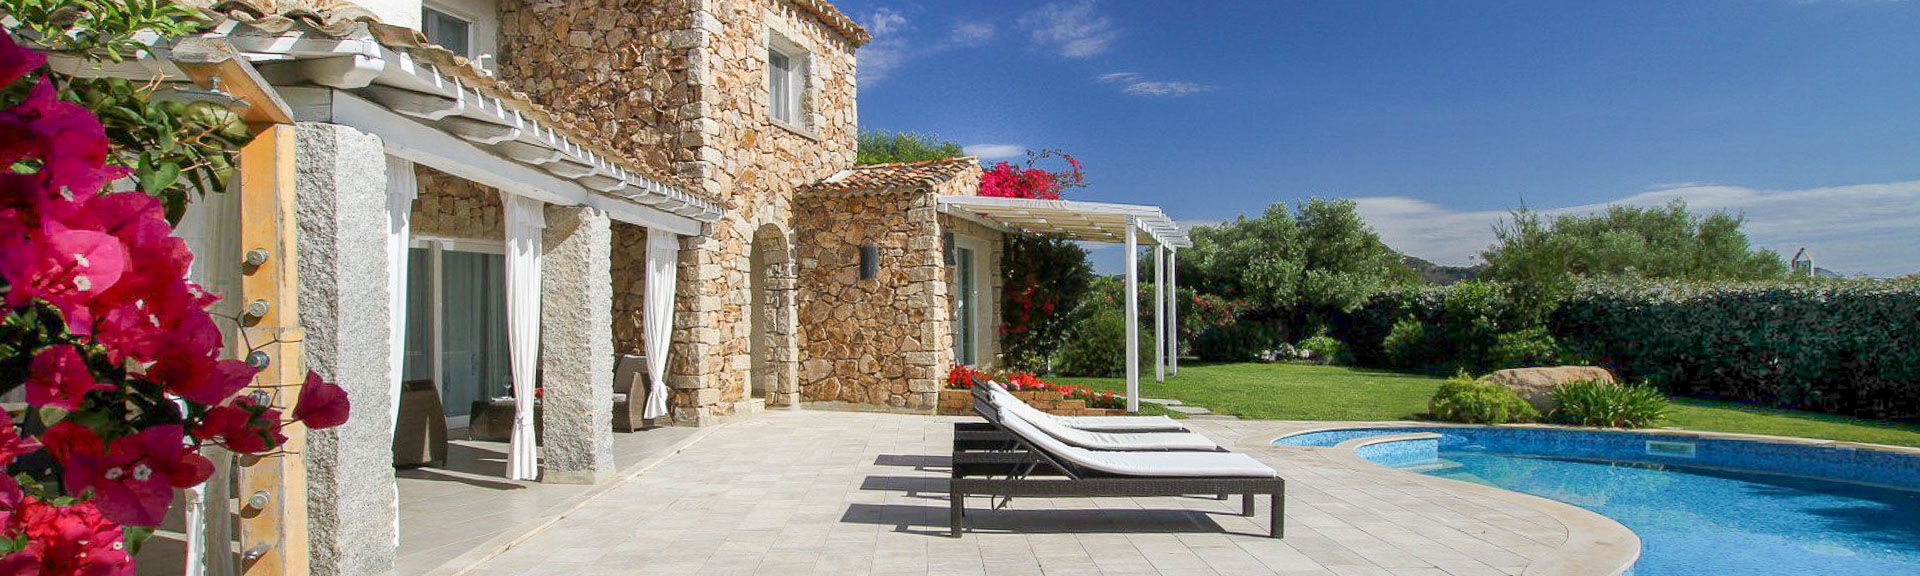 Villa Villas Resort 12, Costa Rei, Sardinien